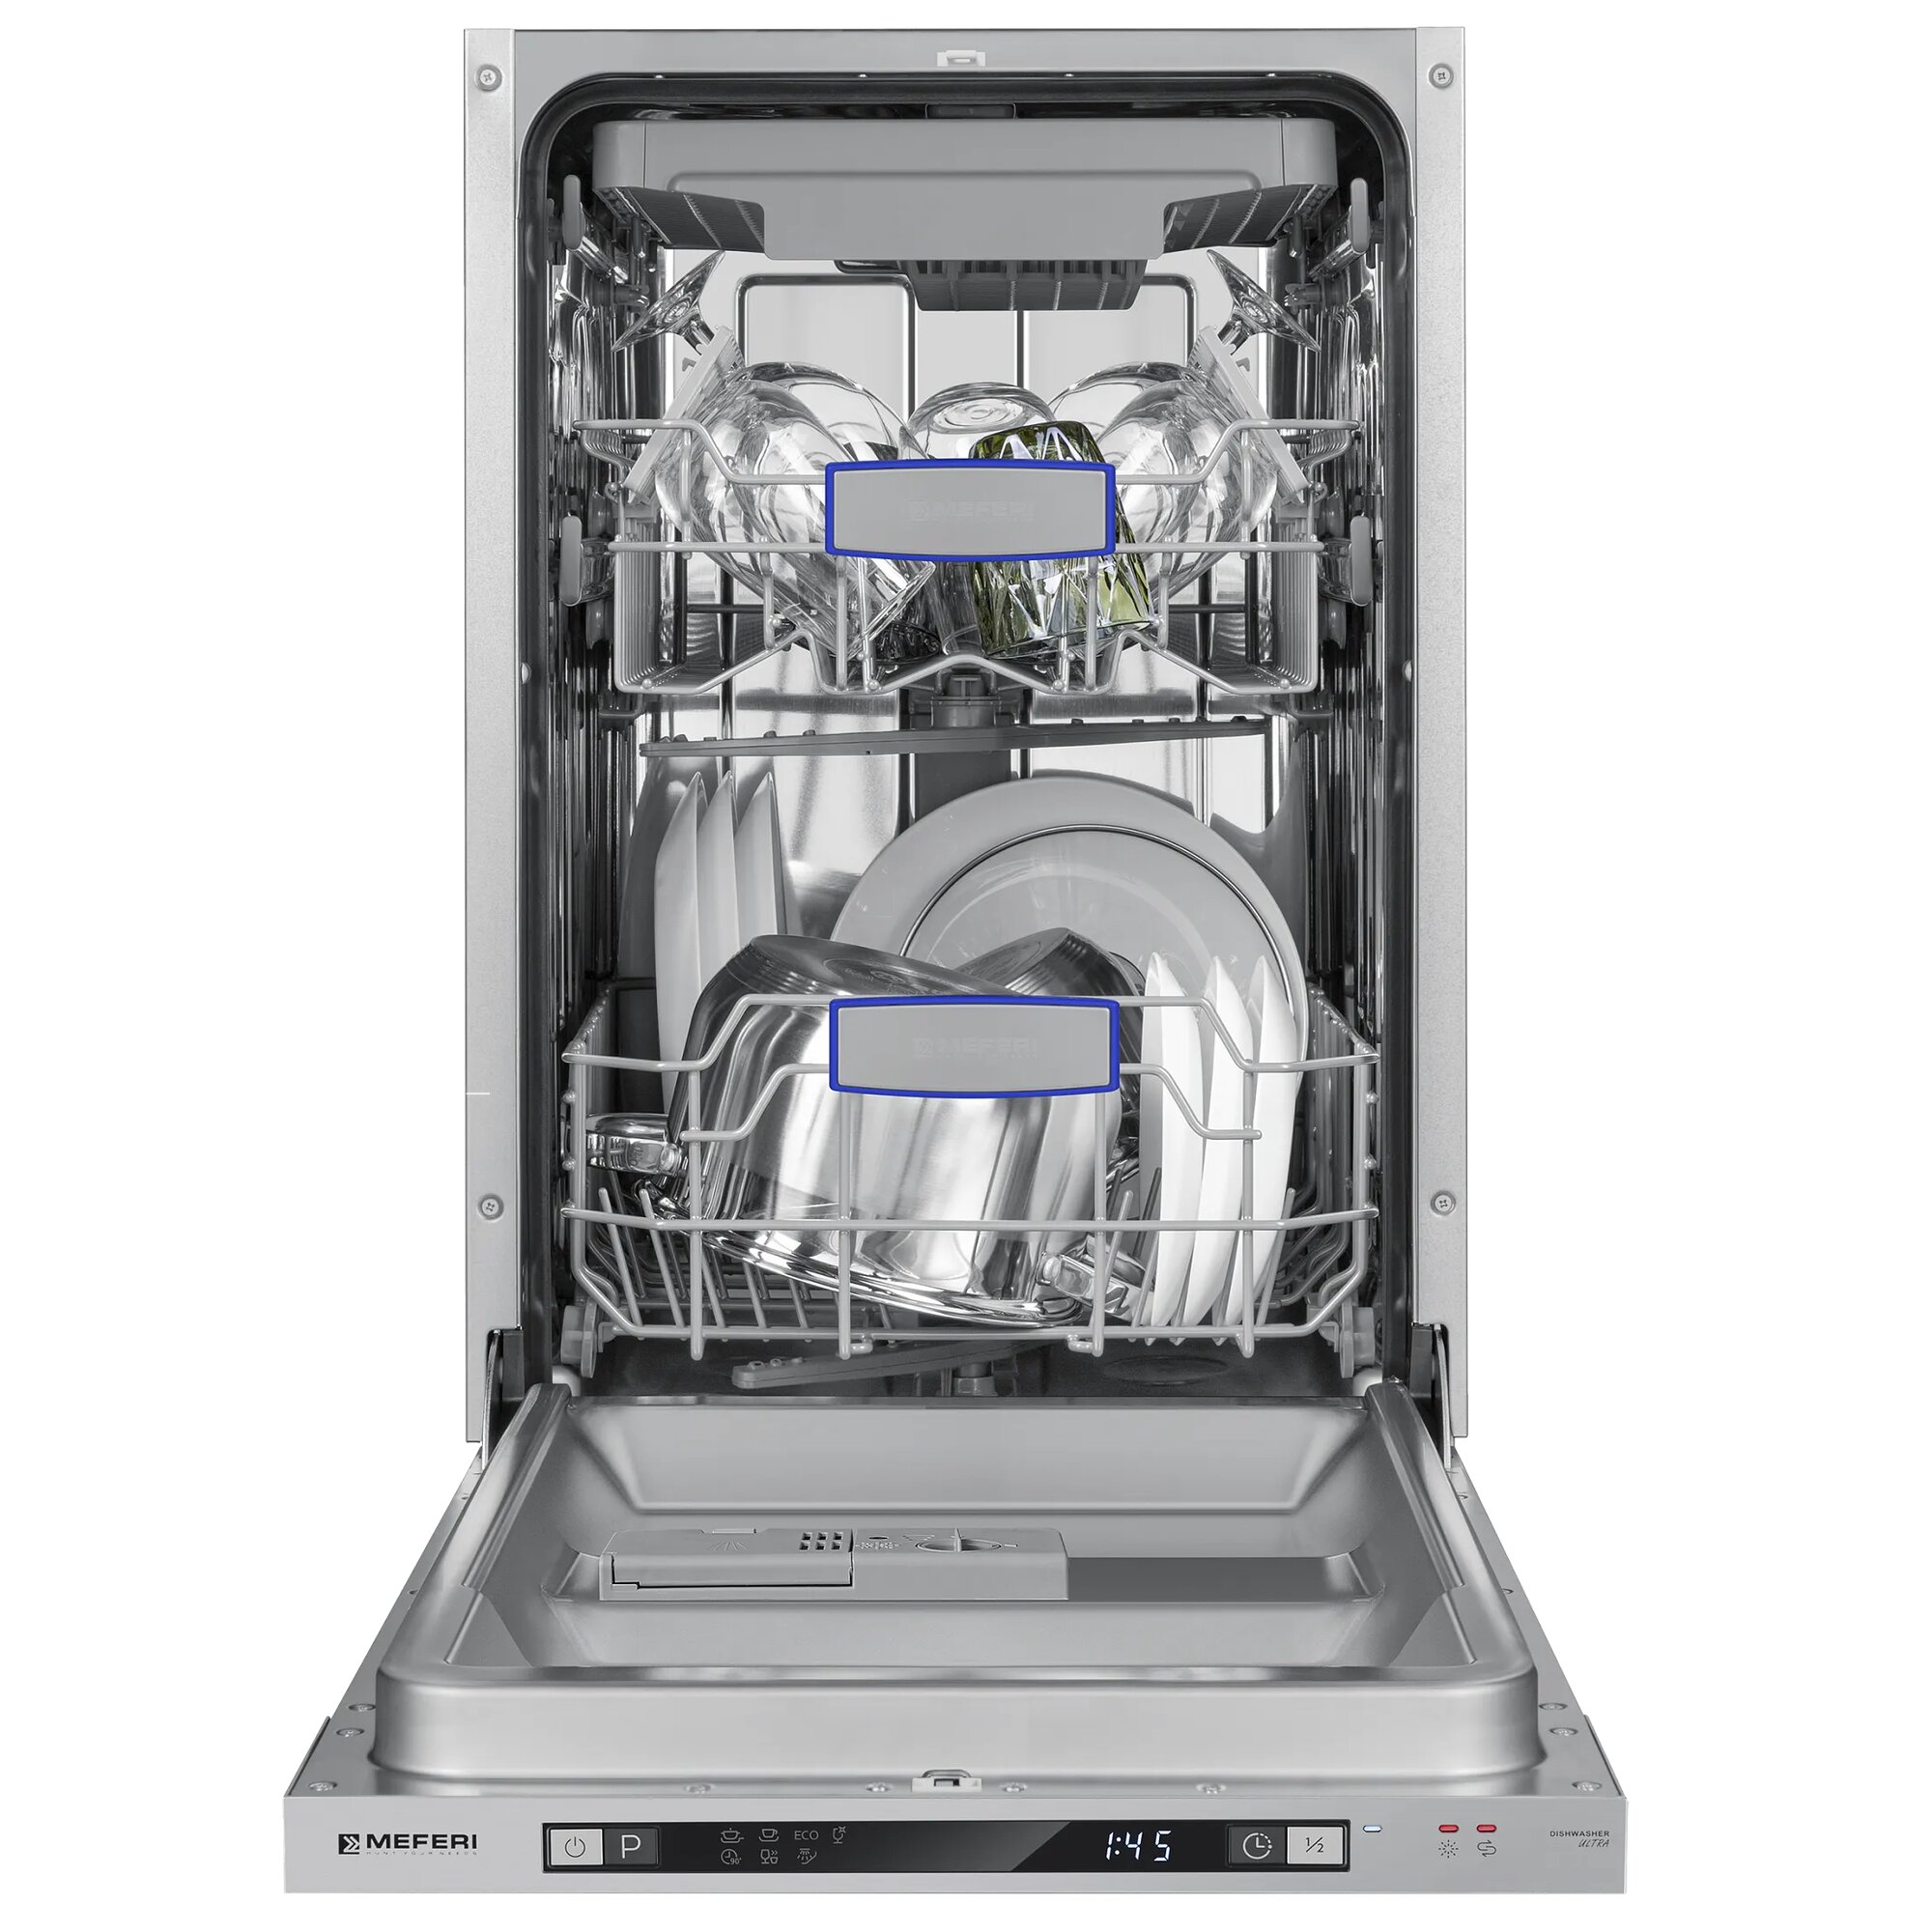 Встраиваемая посудомоечная машина Meferi MDW4573 ULTRA